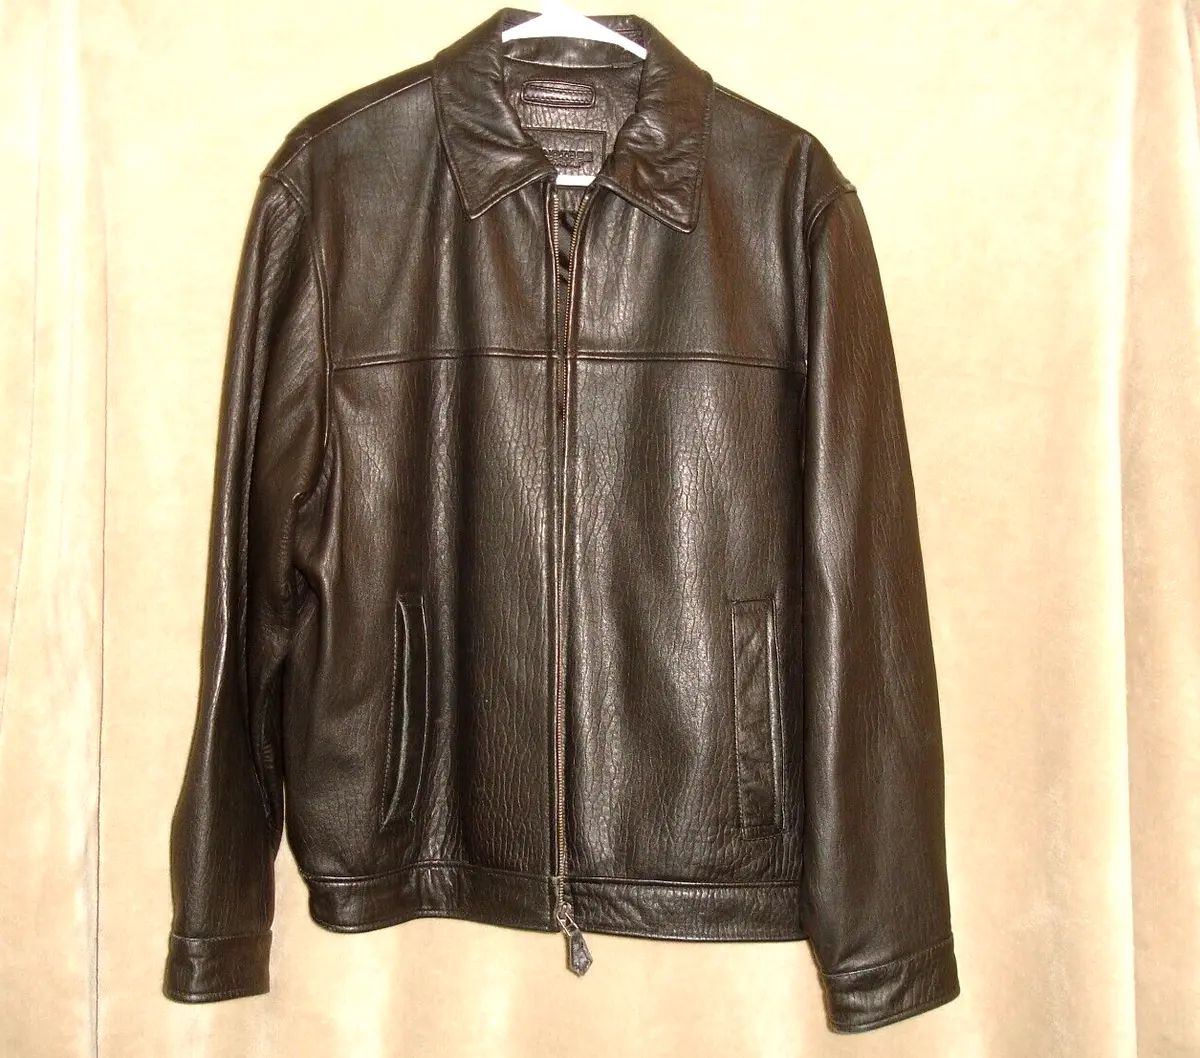 Roundtree & Yorke Lambskin Leather Bomber Jacket Black Size Large  | eBay | eBay US